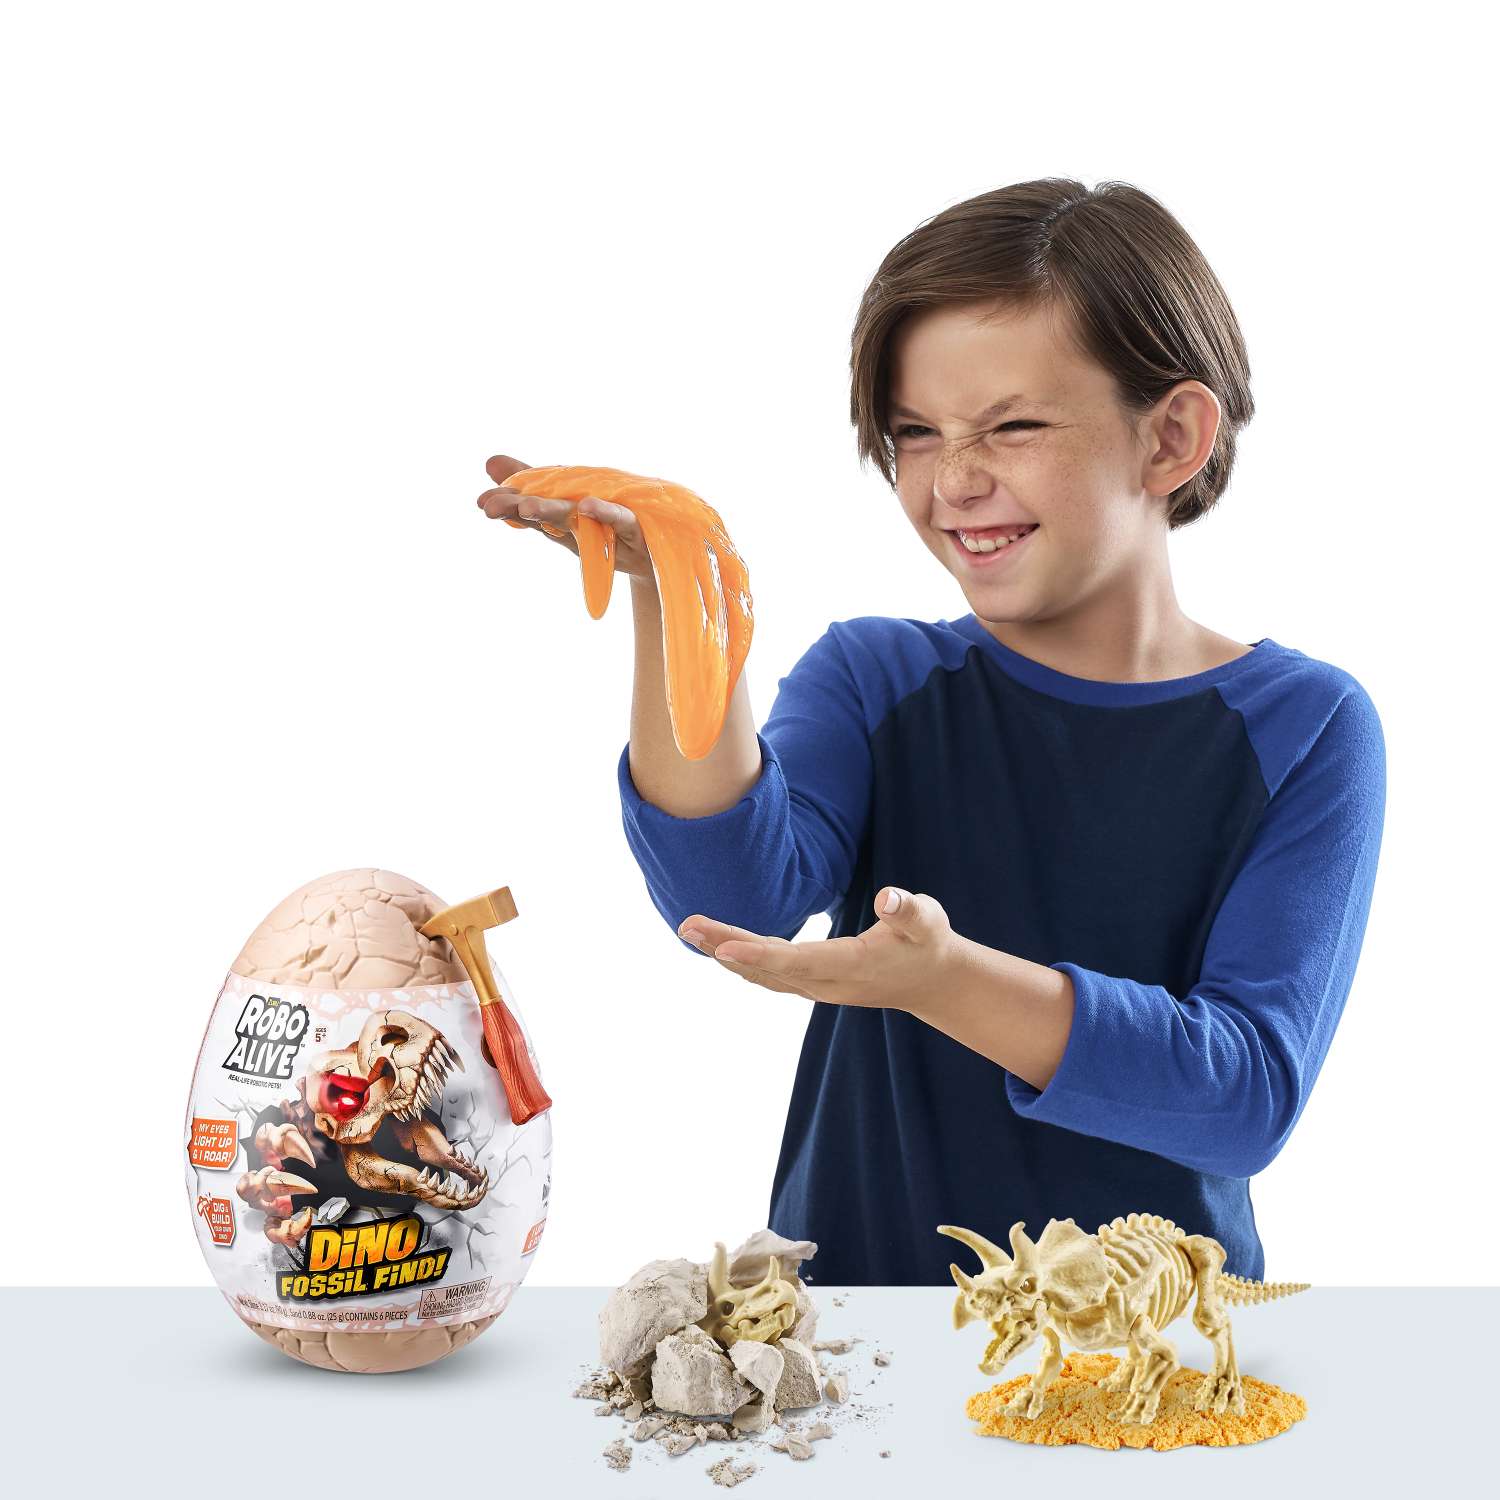 Набор игровой Zuru Robo Alive Dino Fossil Find Яйцо в непрозрачной упаковке (Сюрприз) 7156 - фото 7